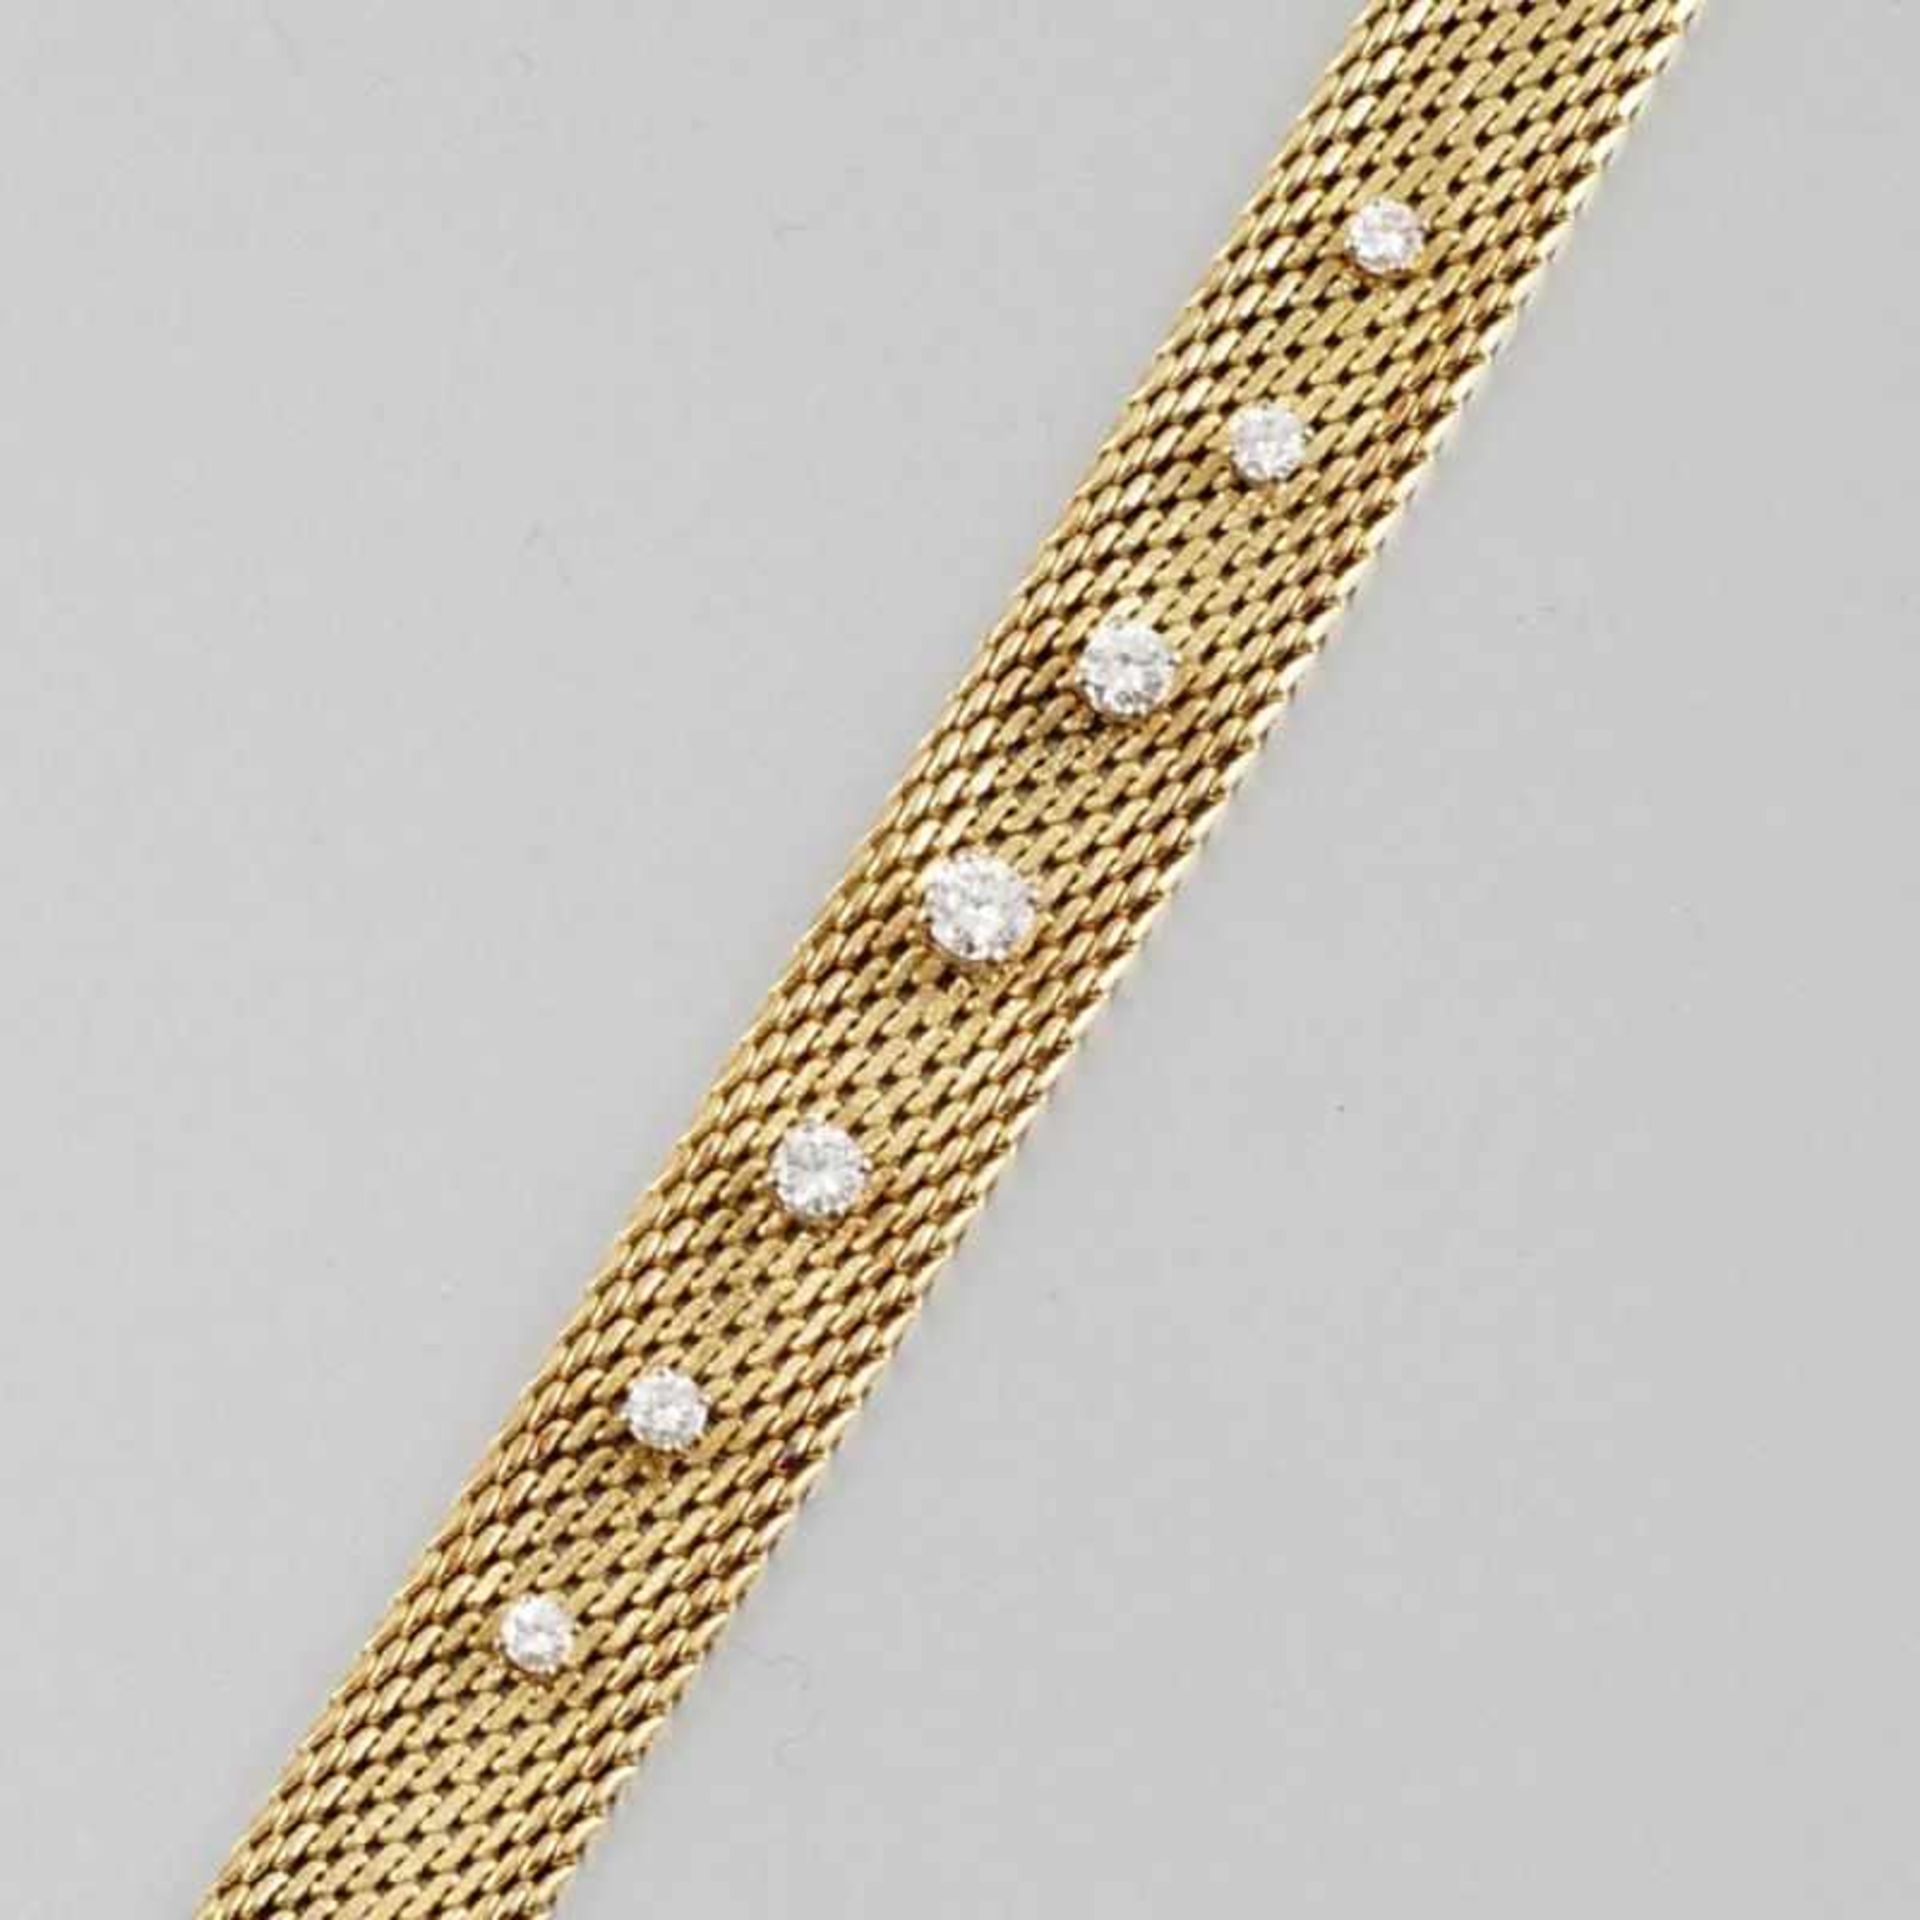 Armband mit Brillanten585er GG und WG, gestemp. 7 Brillanten zus. ca. 1 ct (tw-w/vsi). L. 18,2 cm.